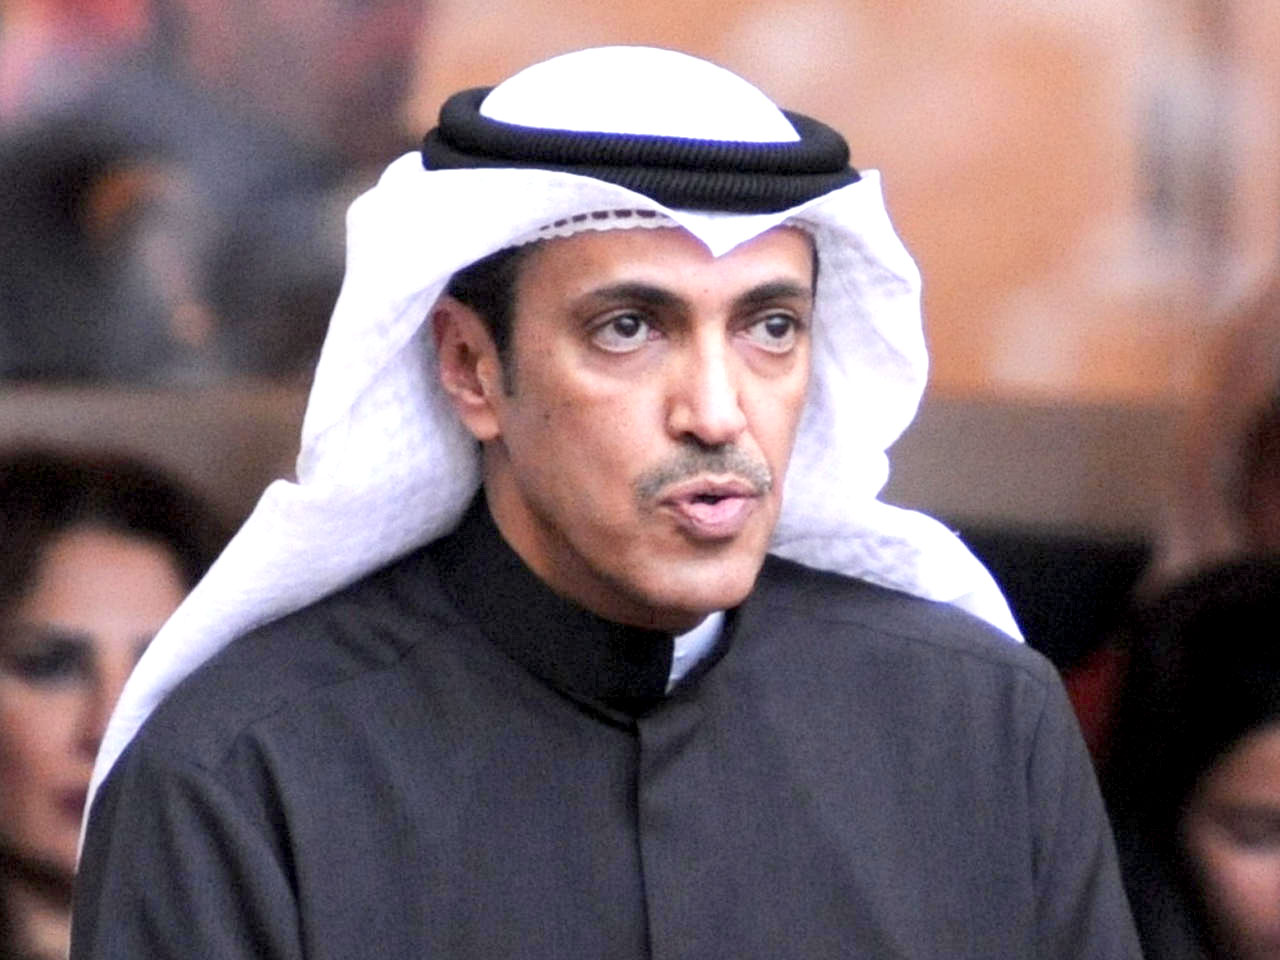 خالد العتيبي للحكومة: البلد ليس في حالة تسمح له بانتكاسة وخيبة لأربع سنوات أخرى